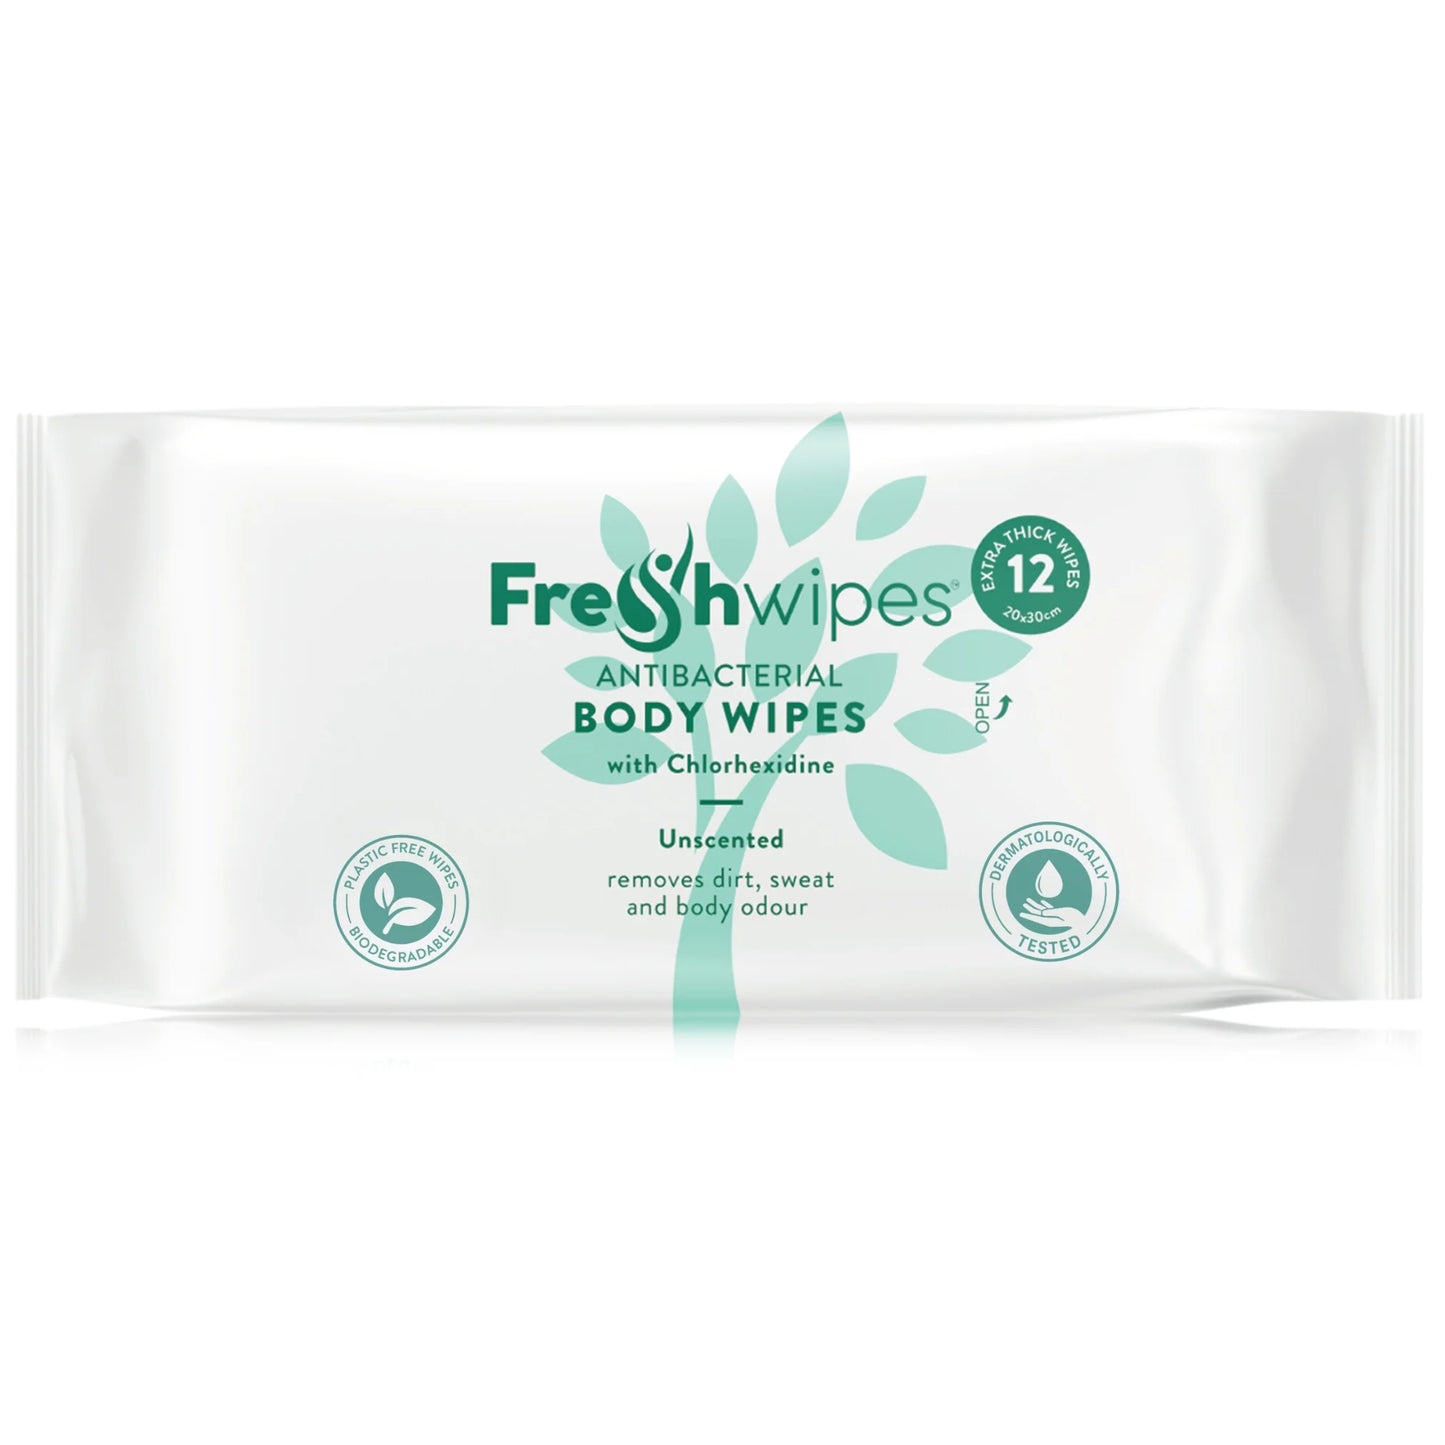 FreshWipes: anti-bacterial full body wipes